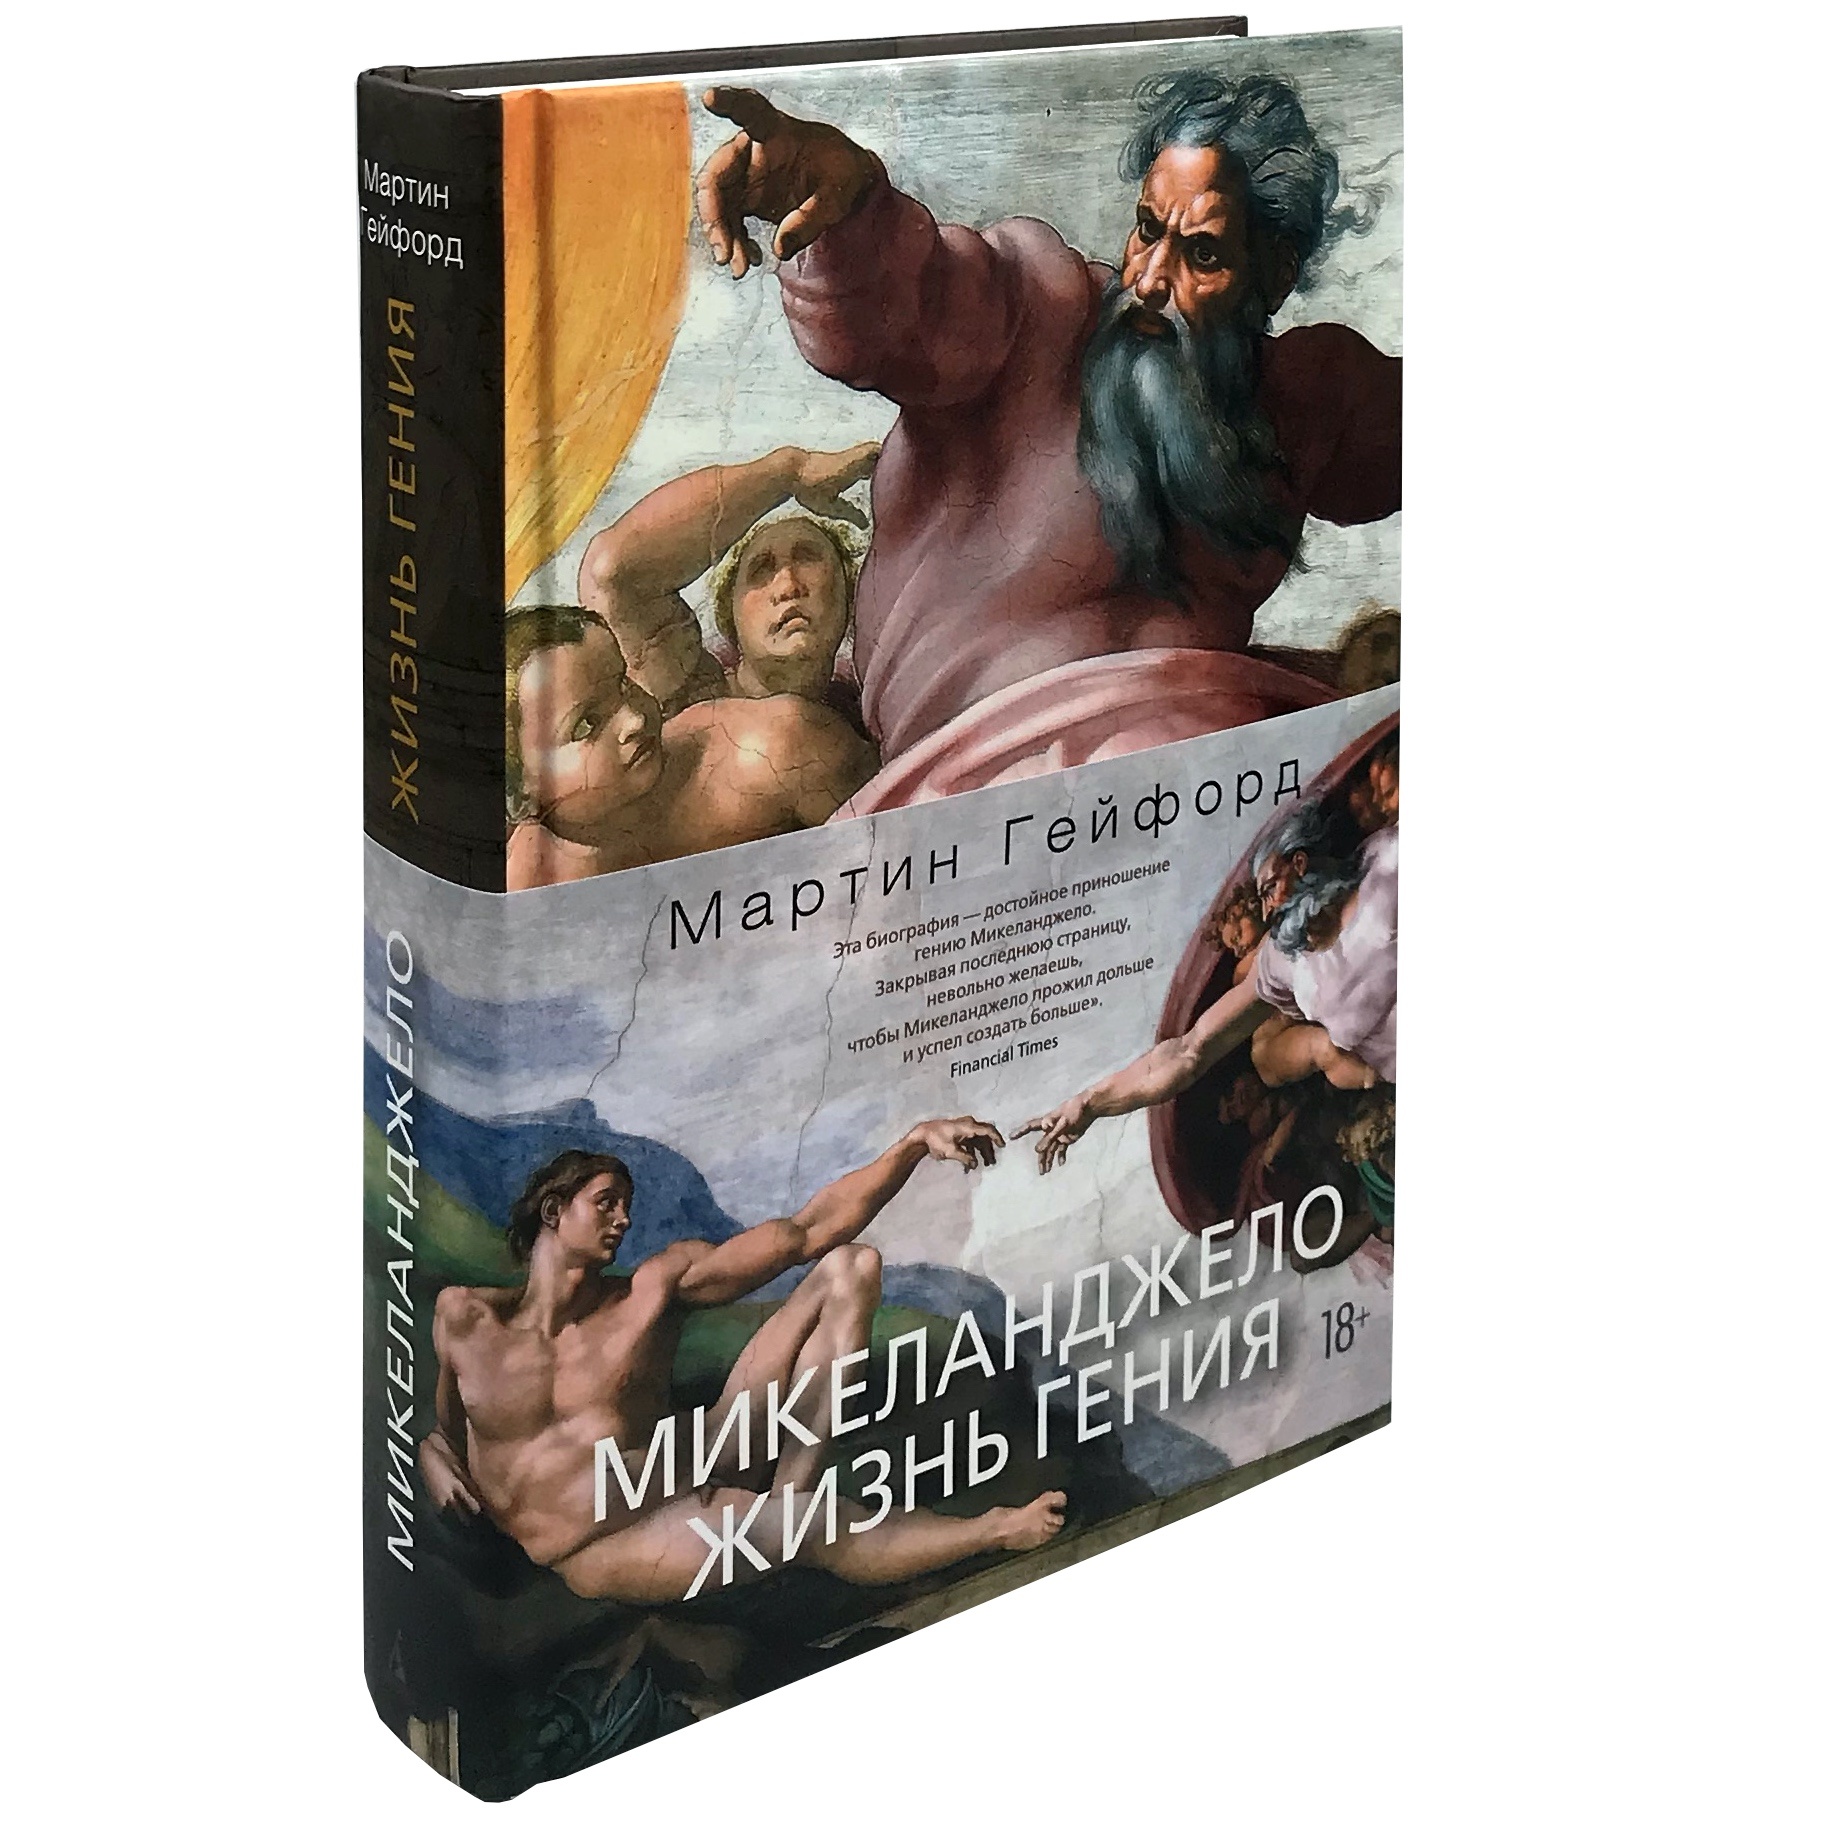 Микеланджело. Жизнь гения. Автор — Мартин Гейфорд. 